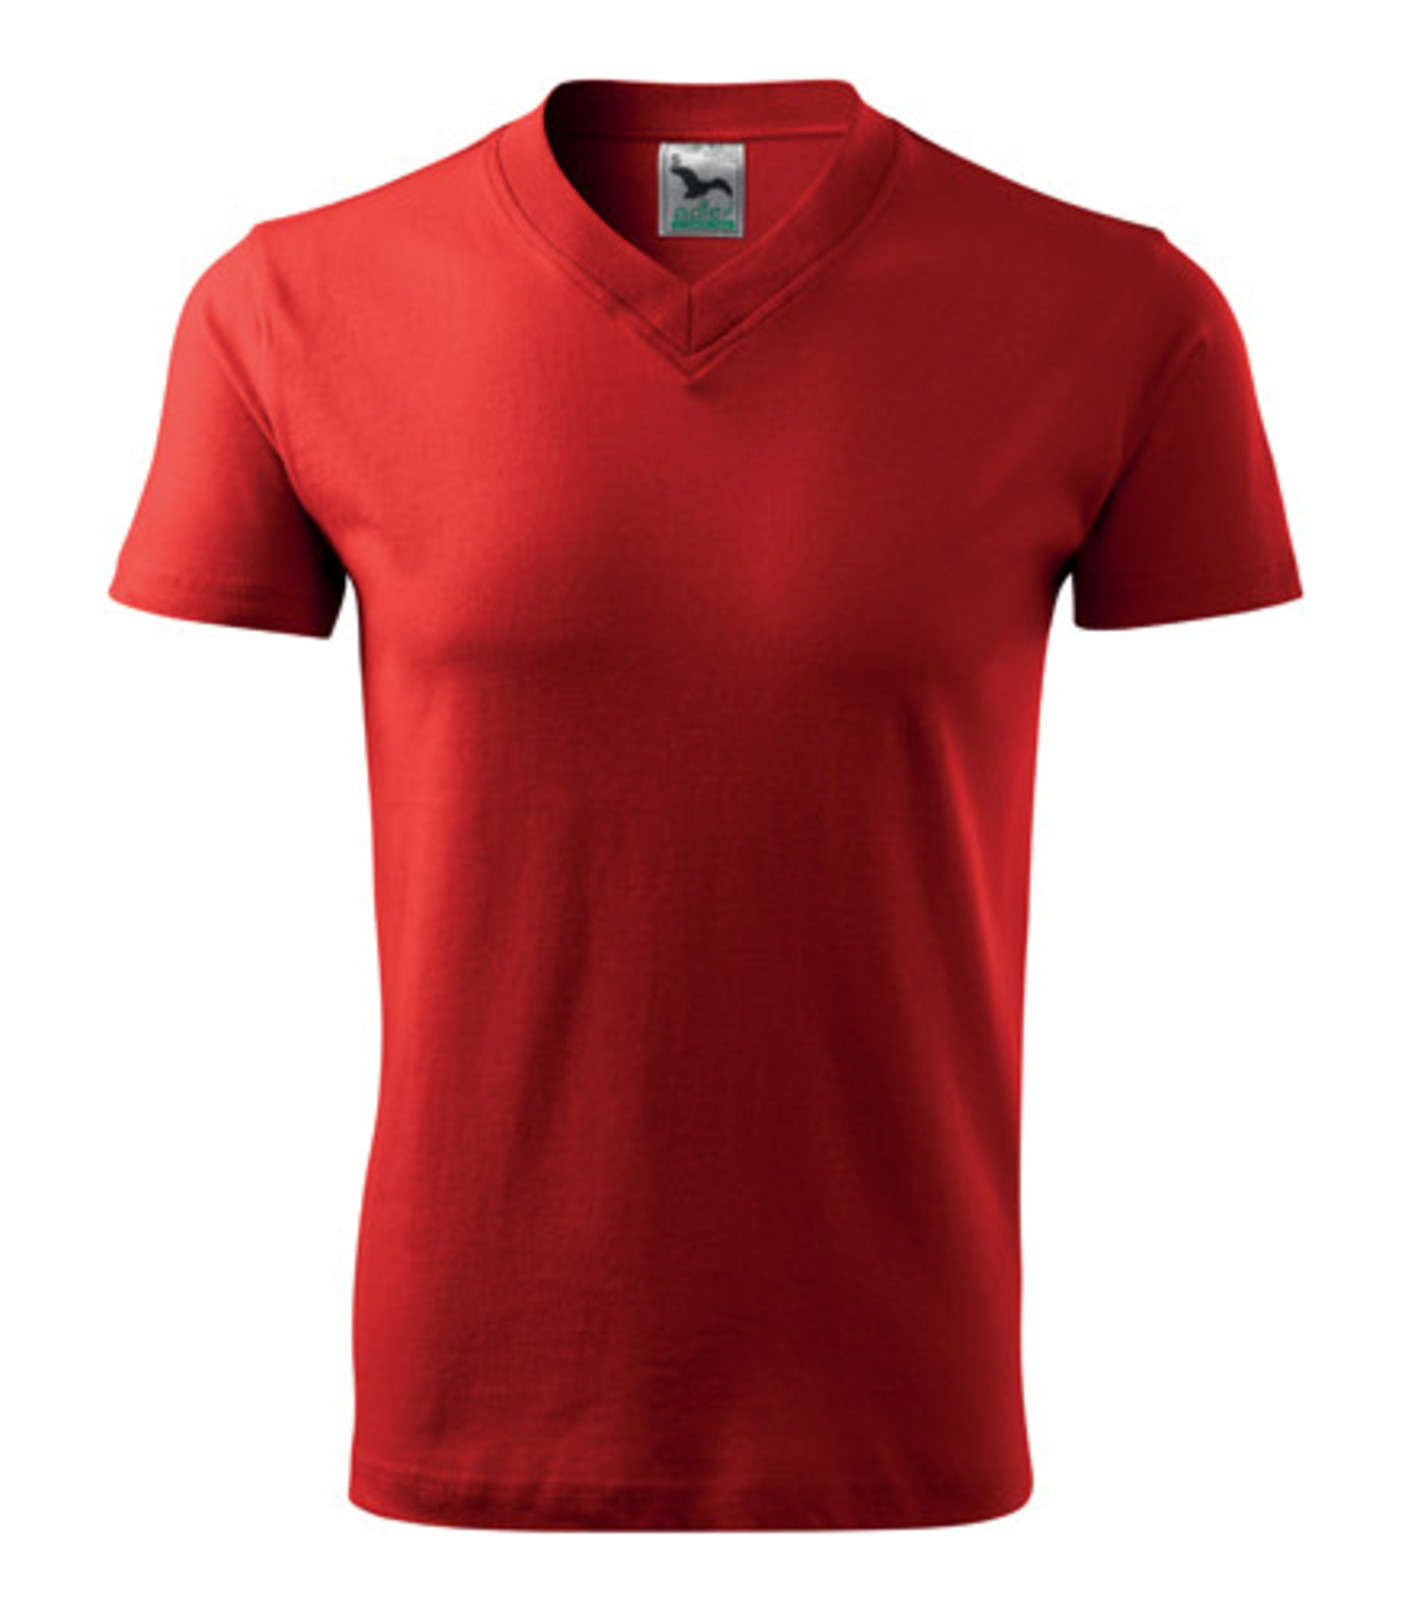 Unisex tričko s výstrihom Adler V-Neck 102 - veľkosť: M, farba: červená